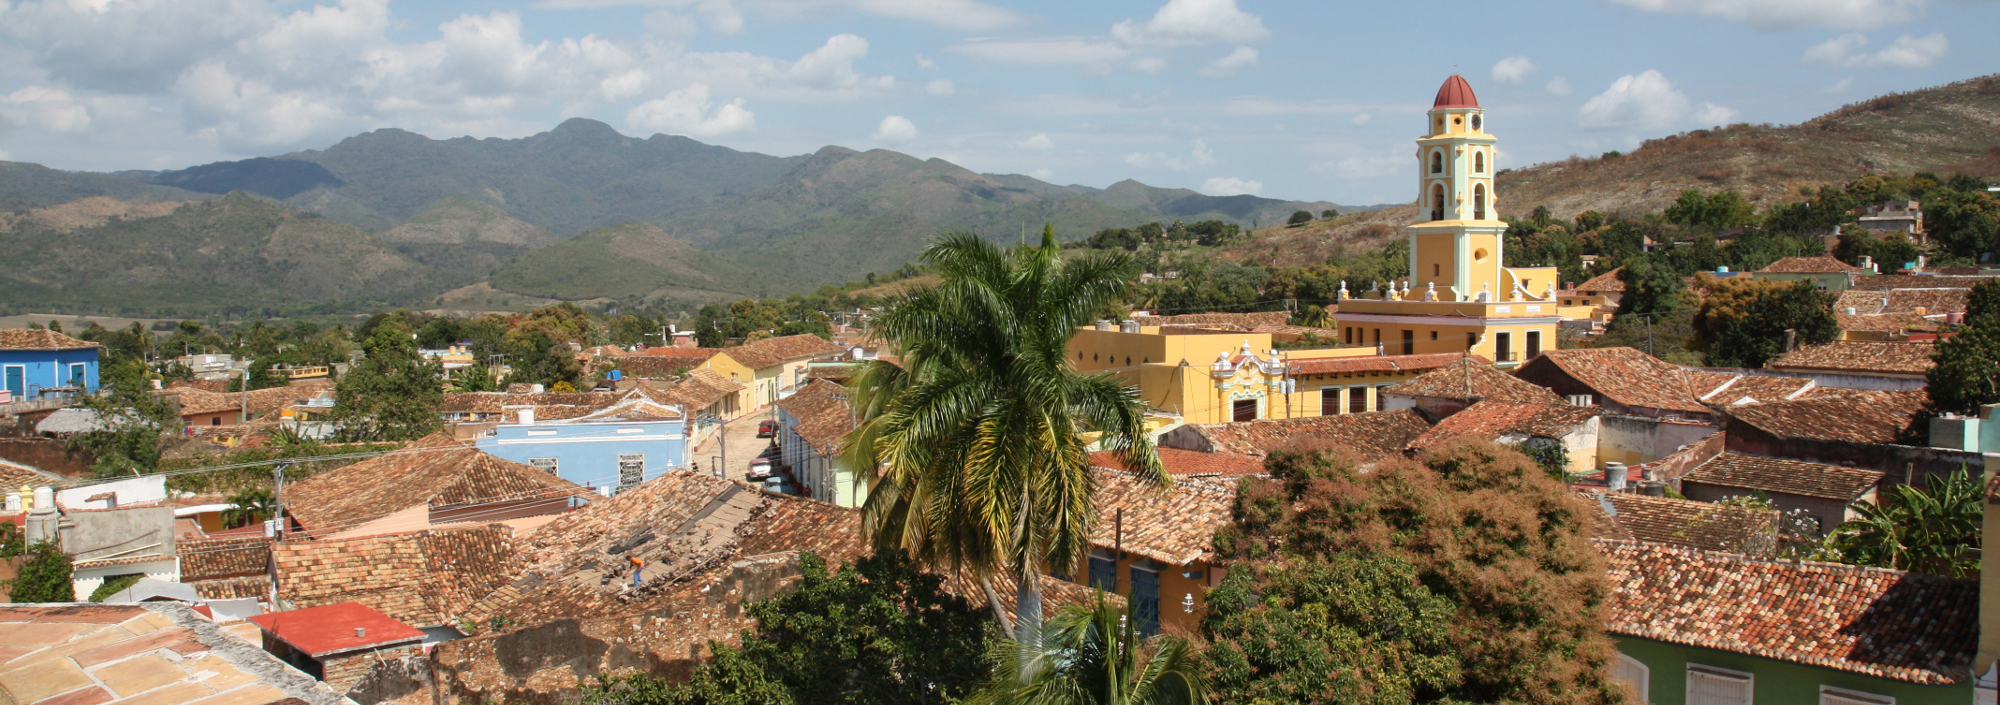 Blick über die koloniale Altstadt Trinidads im Süden von Cuba